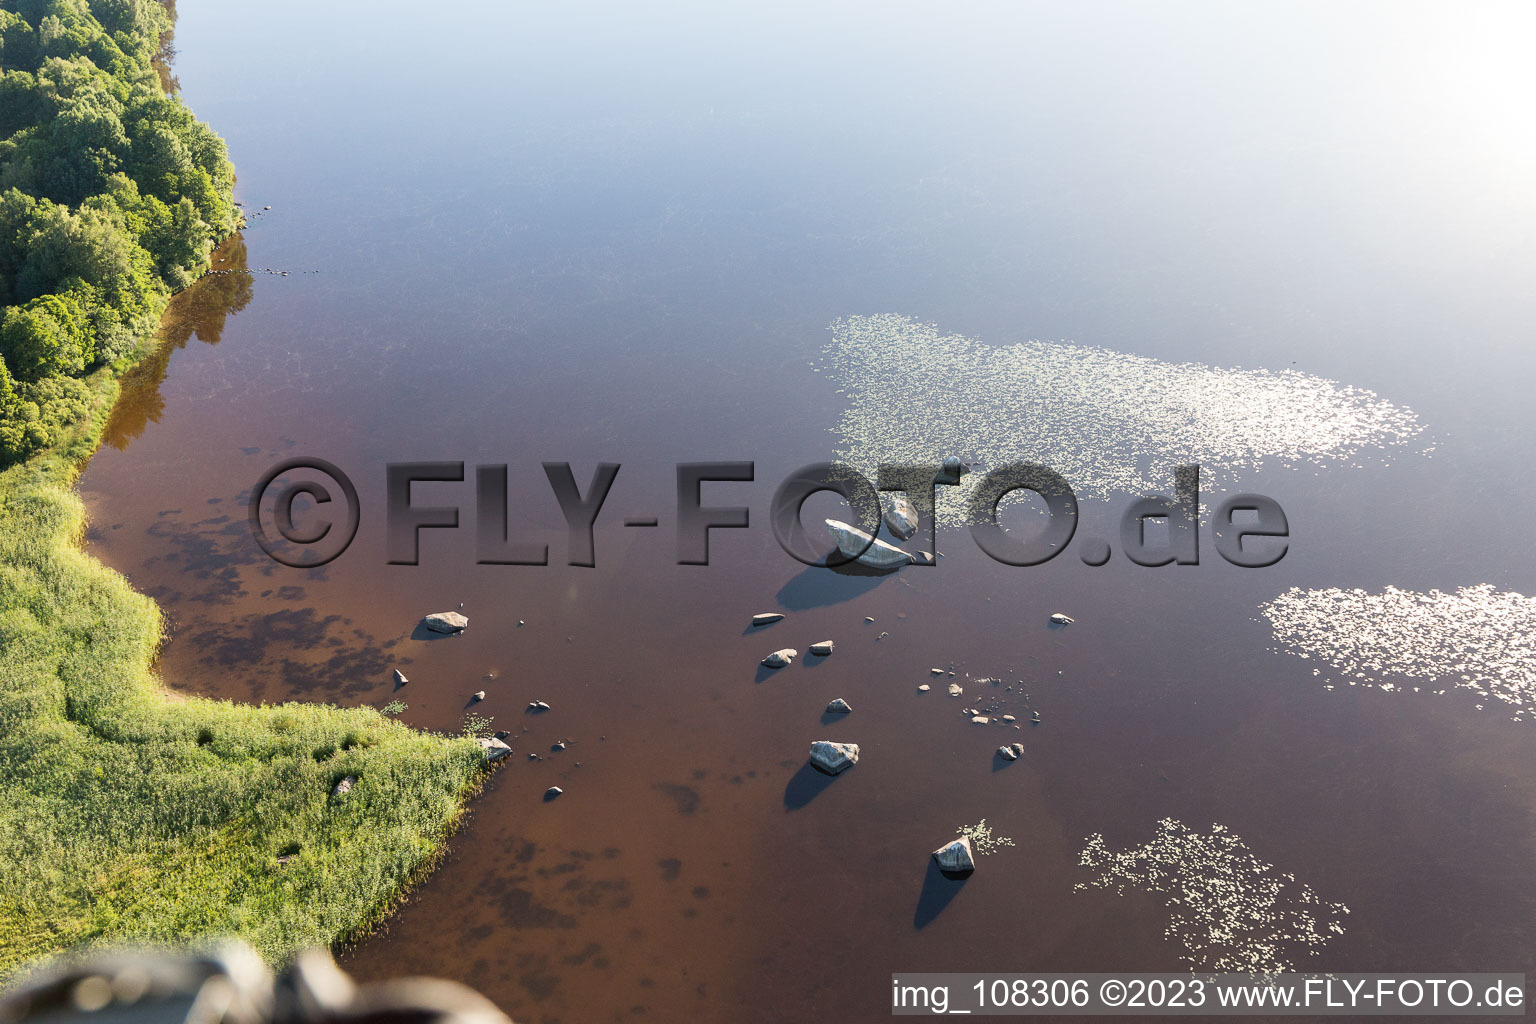 Hunna dans le département Kronoberg, Suède vu d'un drone